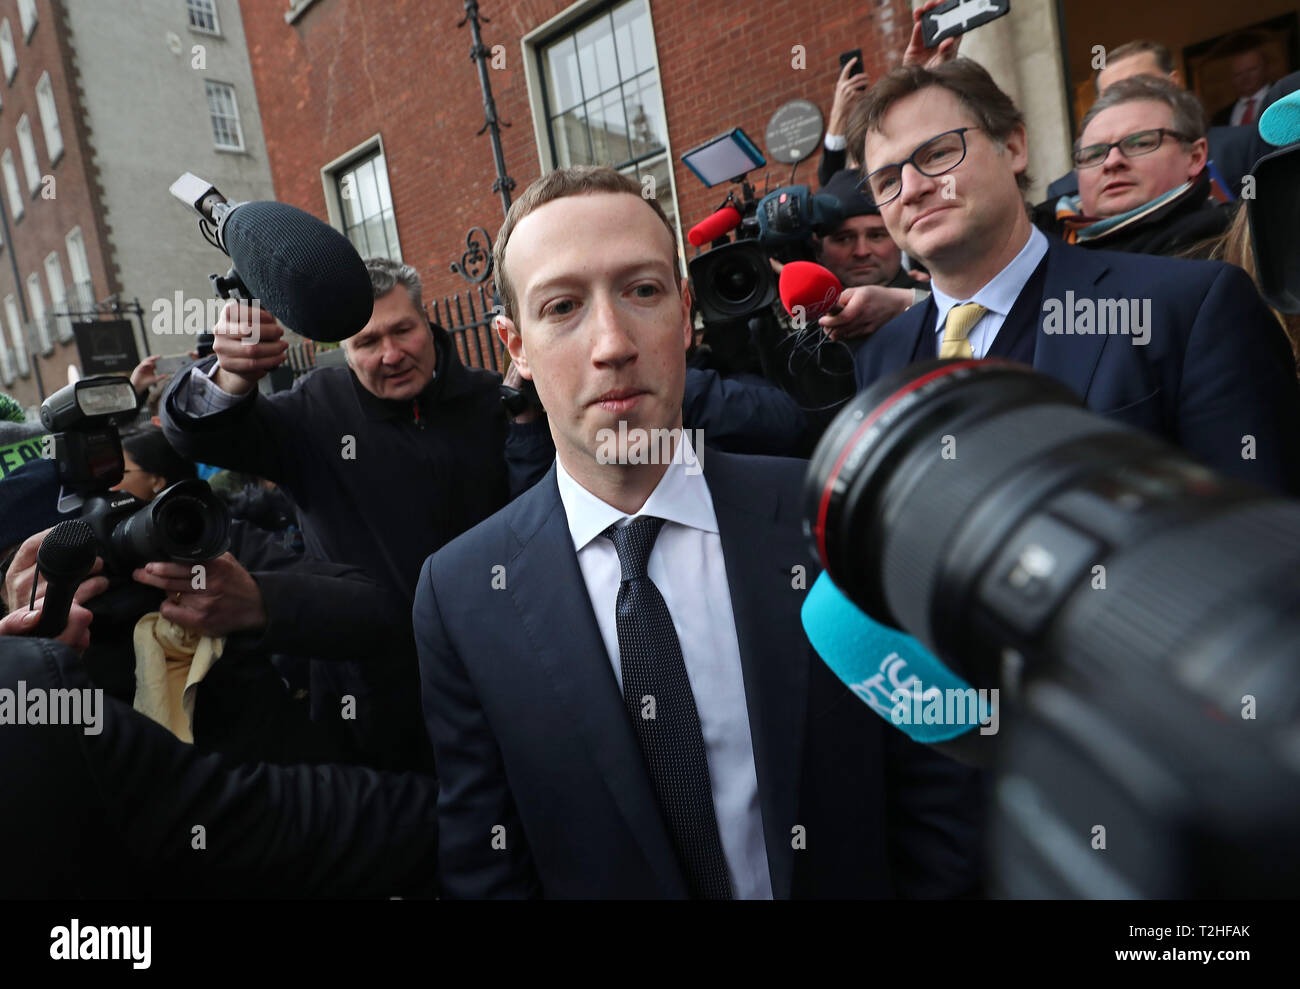 El CEO de Facebook Mark Zuckerberg dejando El Merrion Hotel en Dublín, después de una reunión con políticos para debatir sobre la regulación de los medios de comunicación social y contenidos perjudiciales. Foto de stock